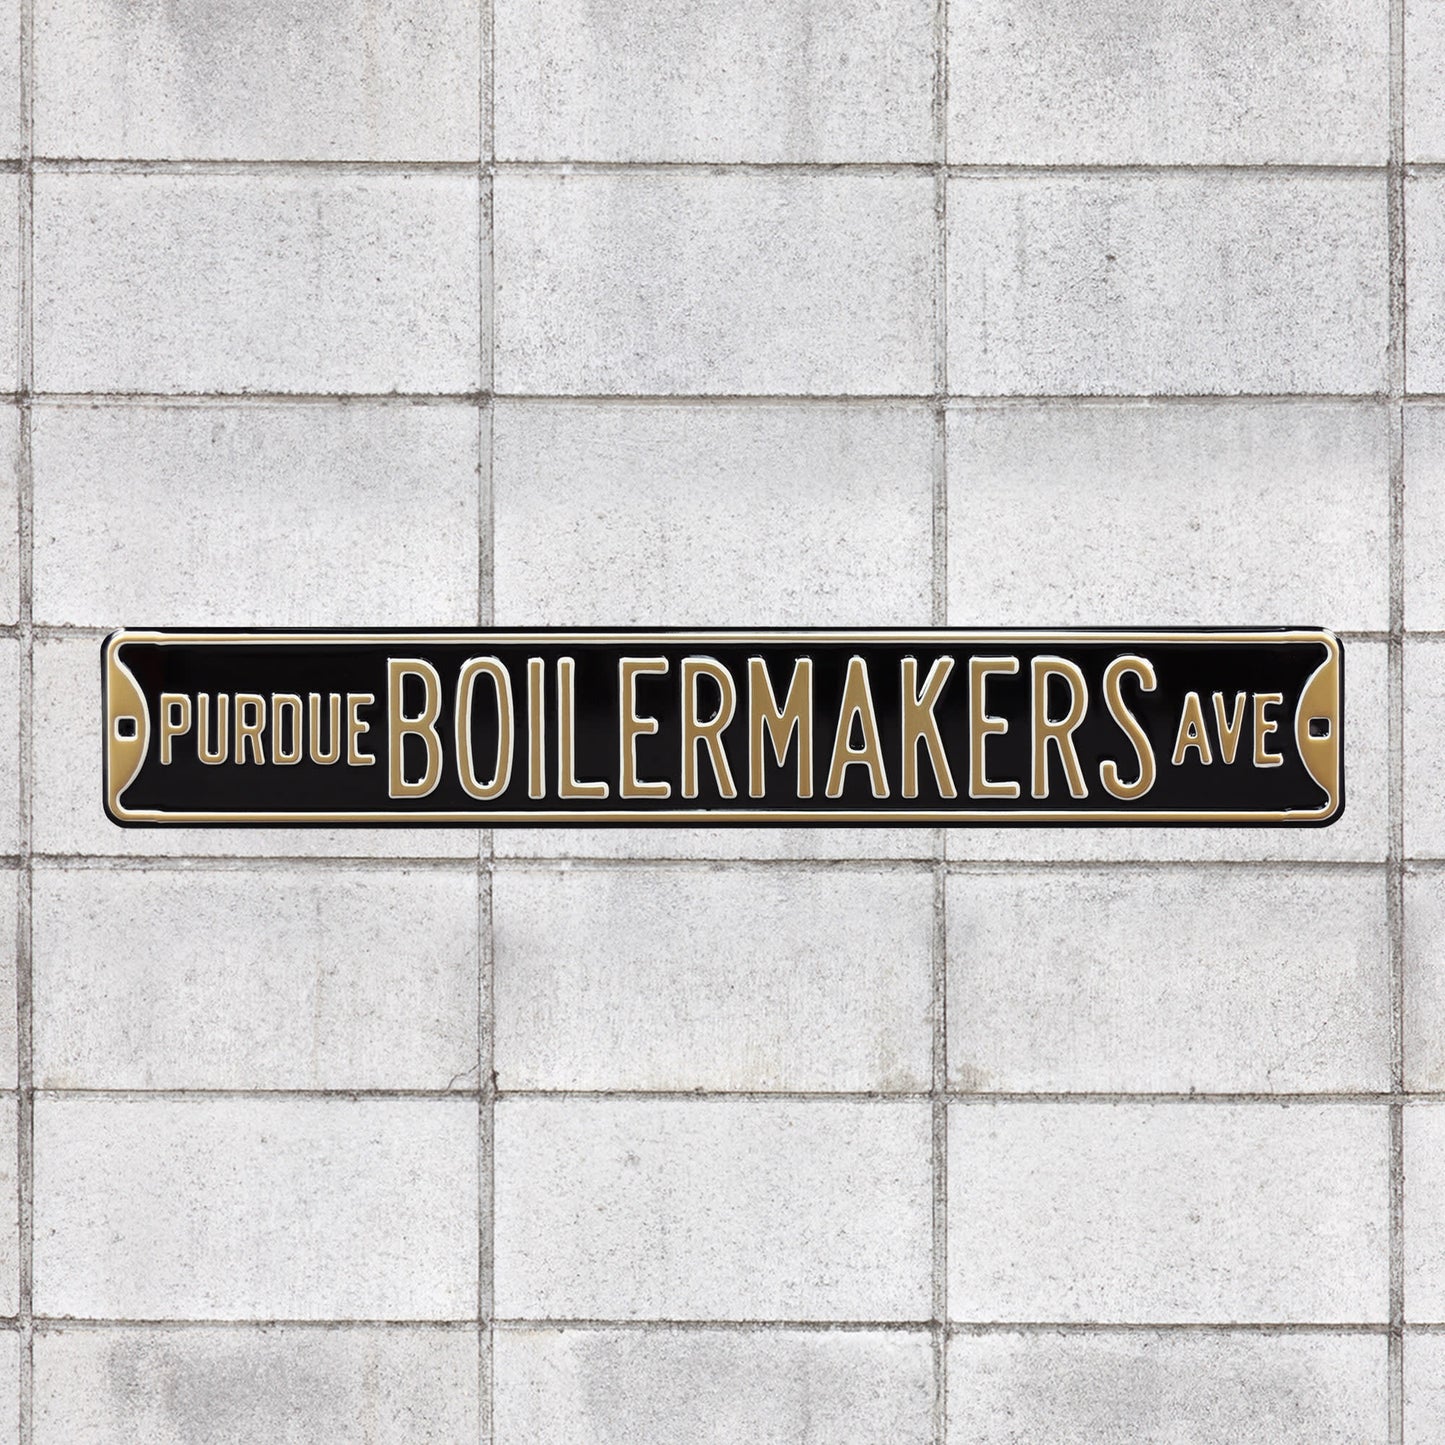 Purdue Boilermakers: Purdue Boilermakers Avenue (Black) - Officially Licensed Metal Street Sign